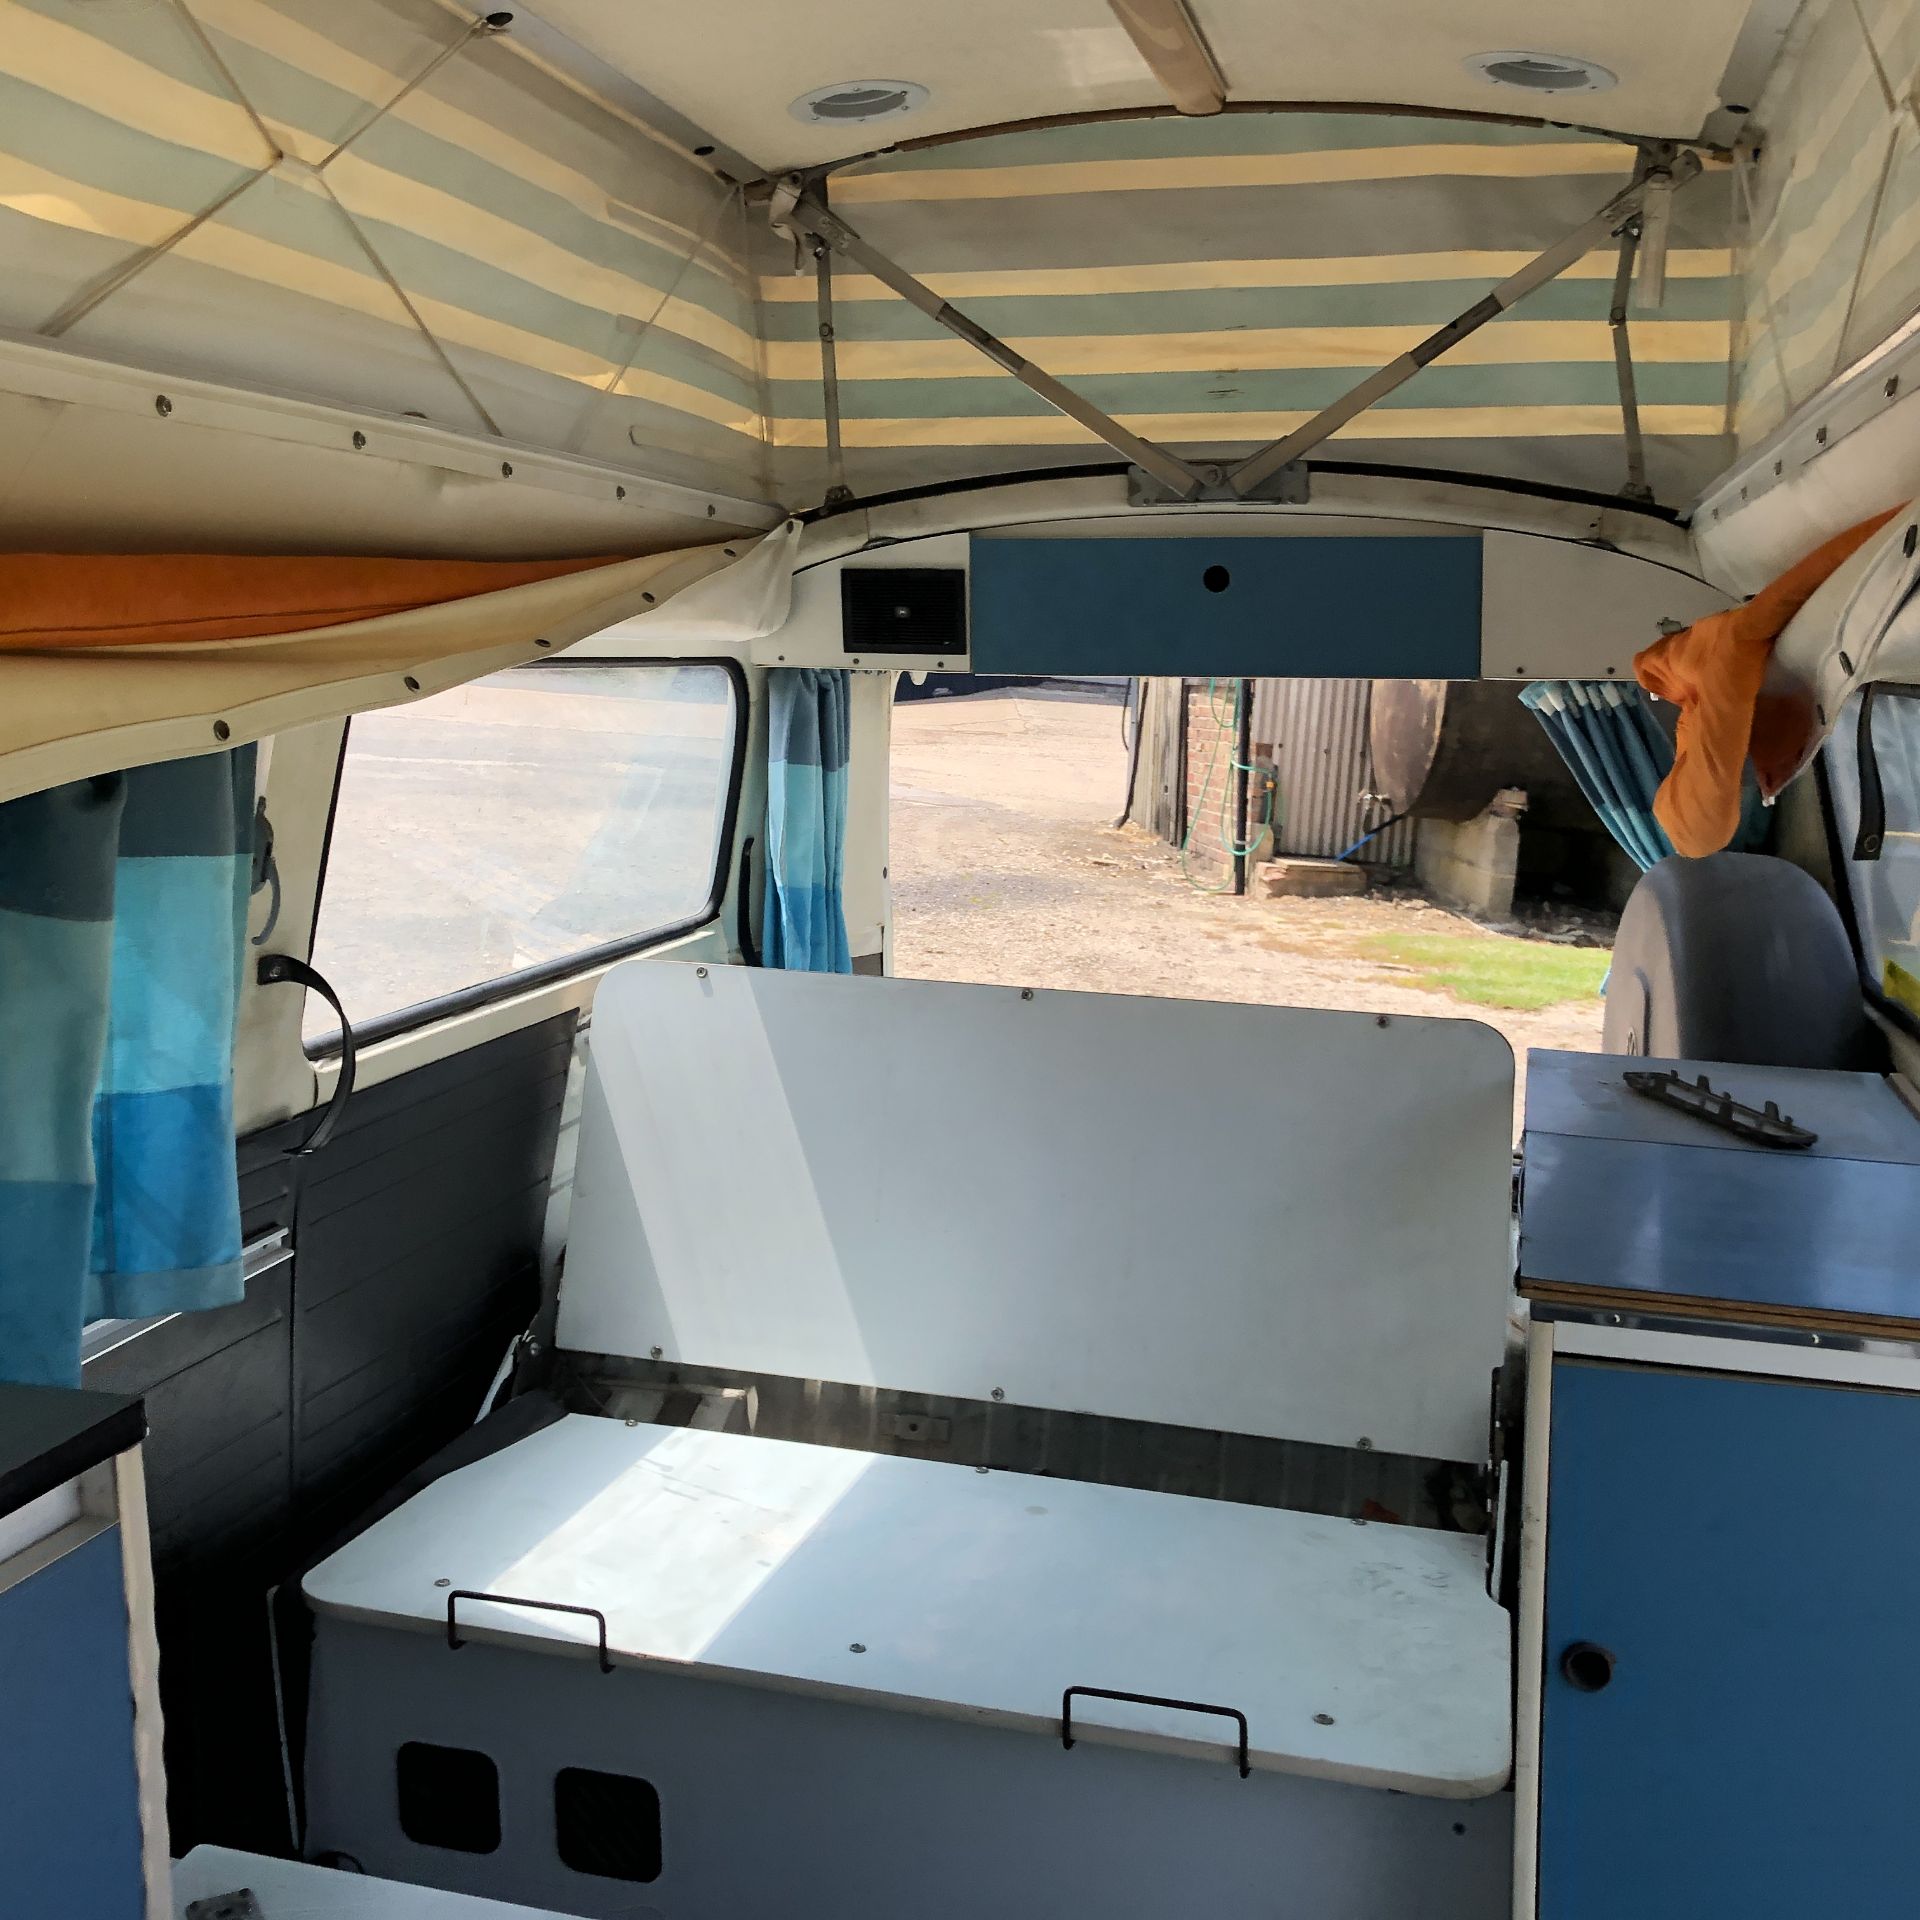 VW Microbus 8 Seater Caravanette Devon - 'Mr Blue' Petrol, Registration UMH 420S, First Registered - Image 43 of 47